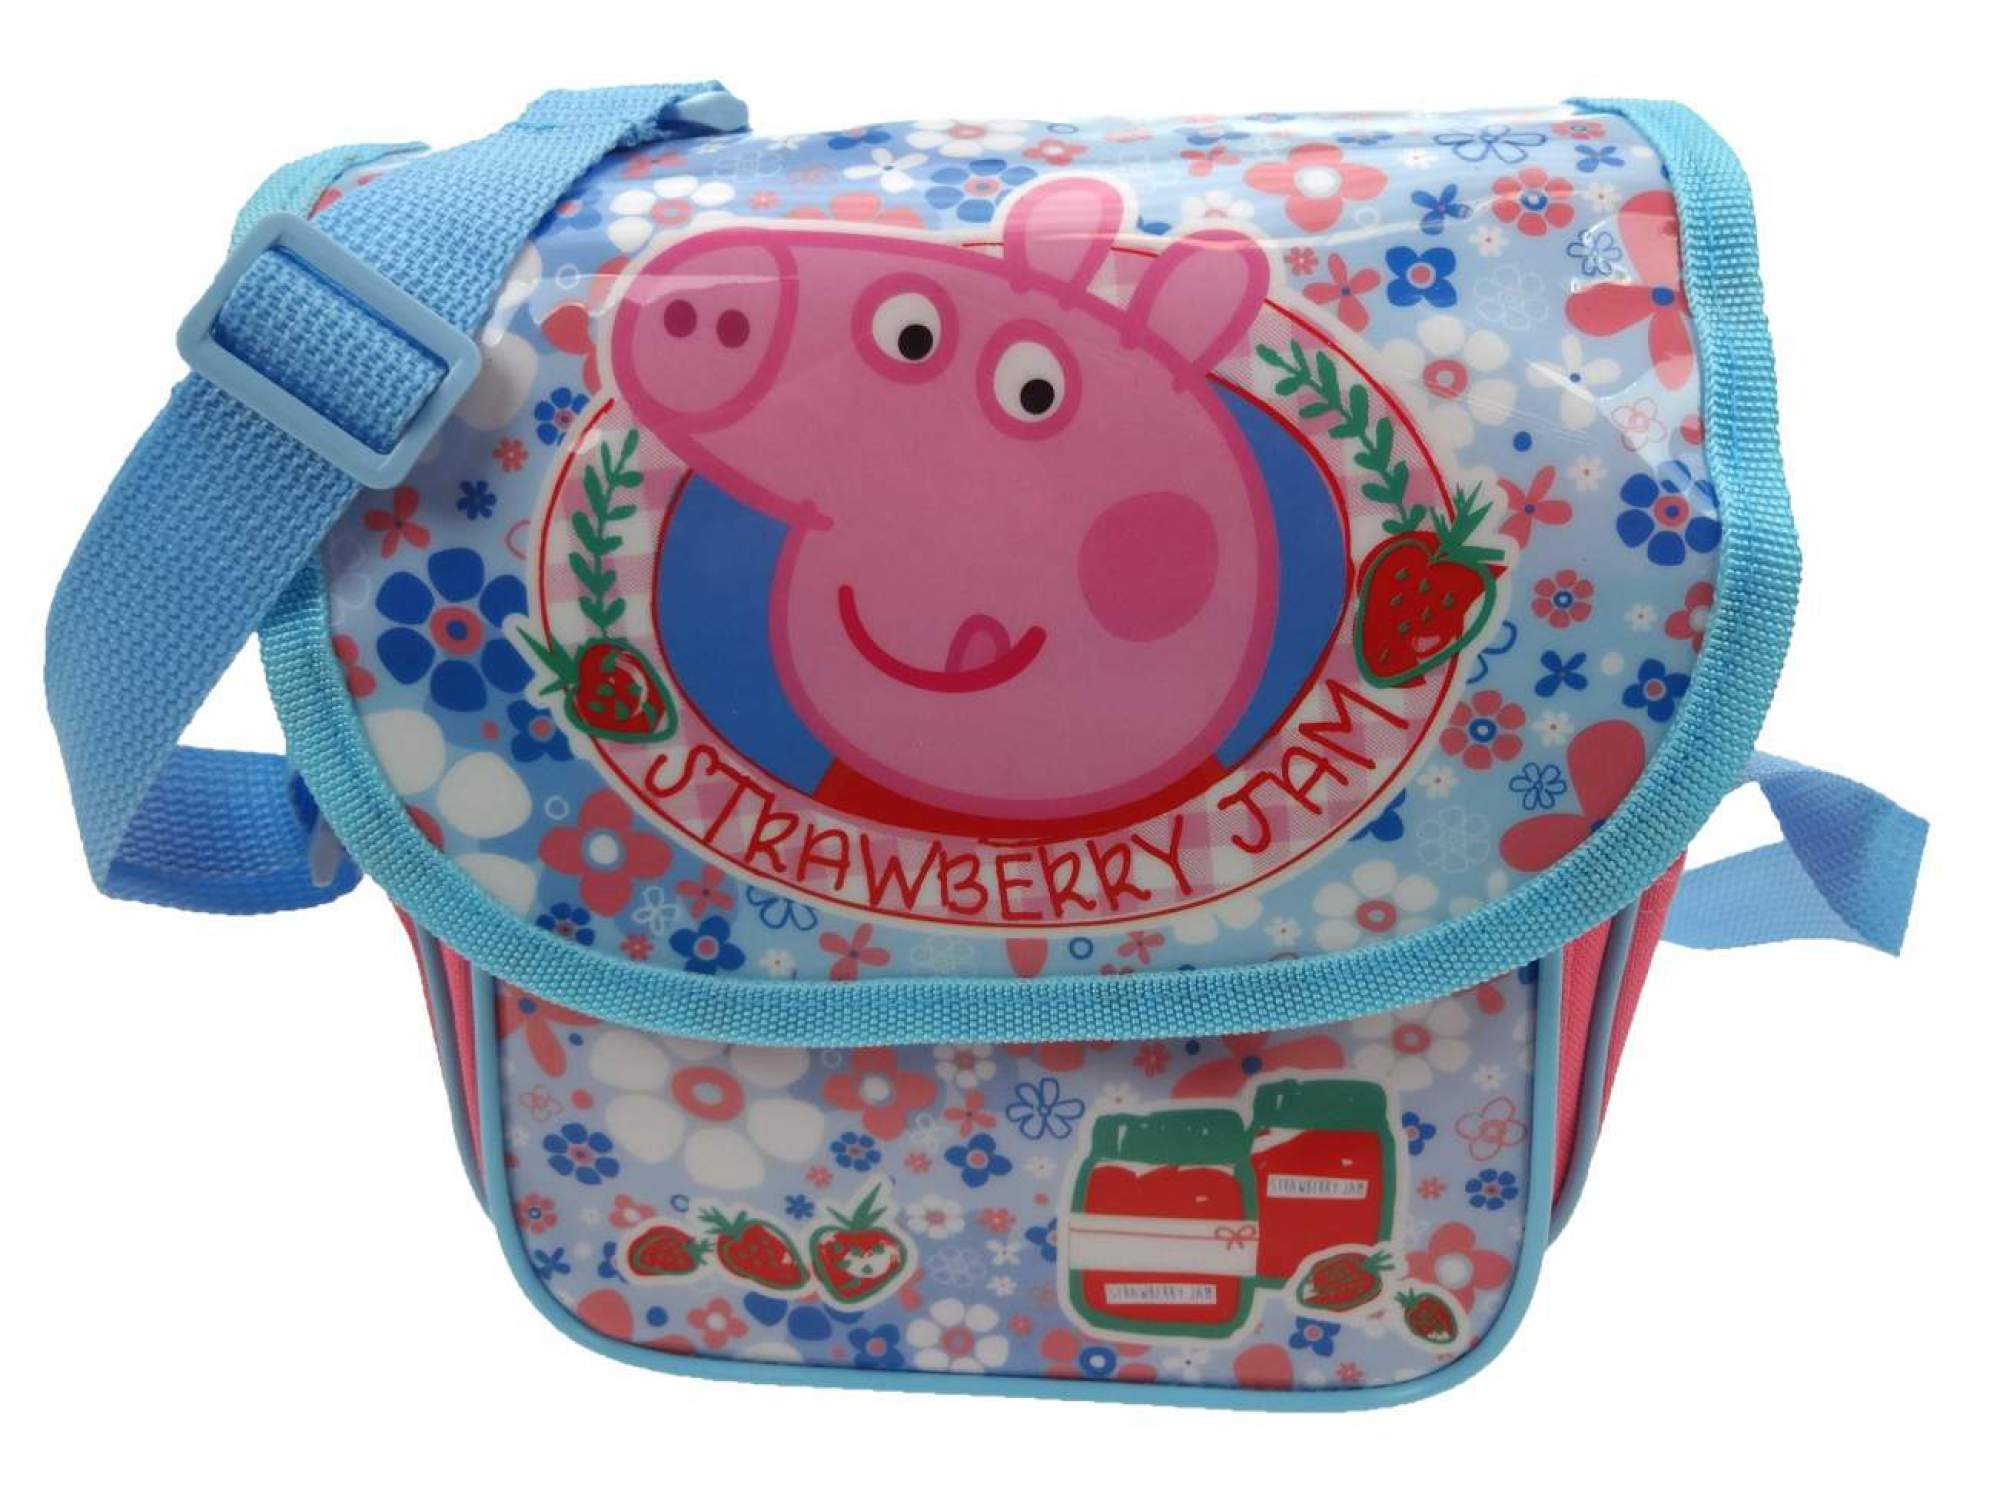 Часы свинка. Часы со свинкой Пеппой. Часы Свинка Пеппа наручные. Детская сумка Свинка Пеппа. Детские сумки Peppa Pig.